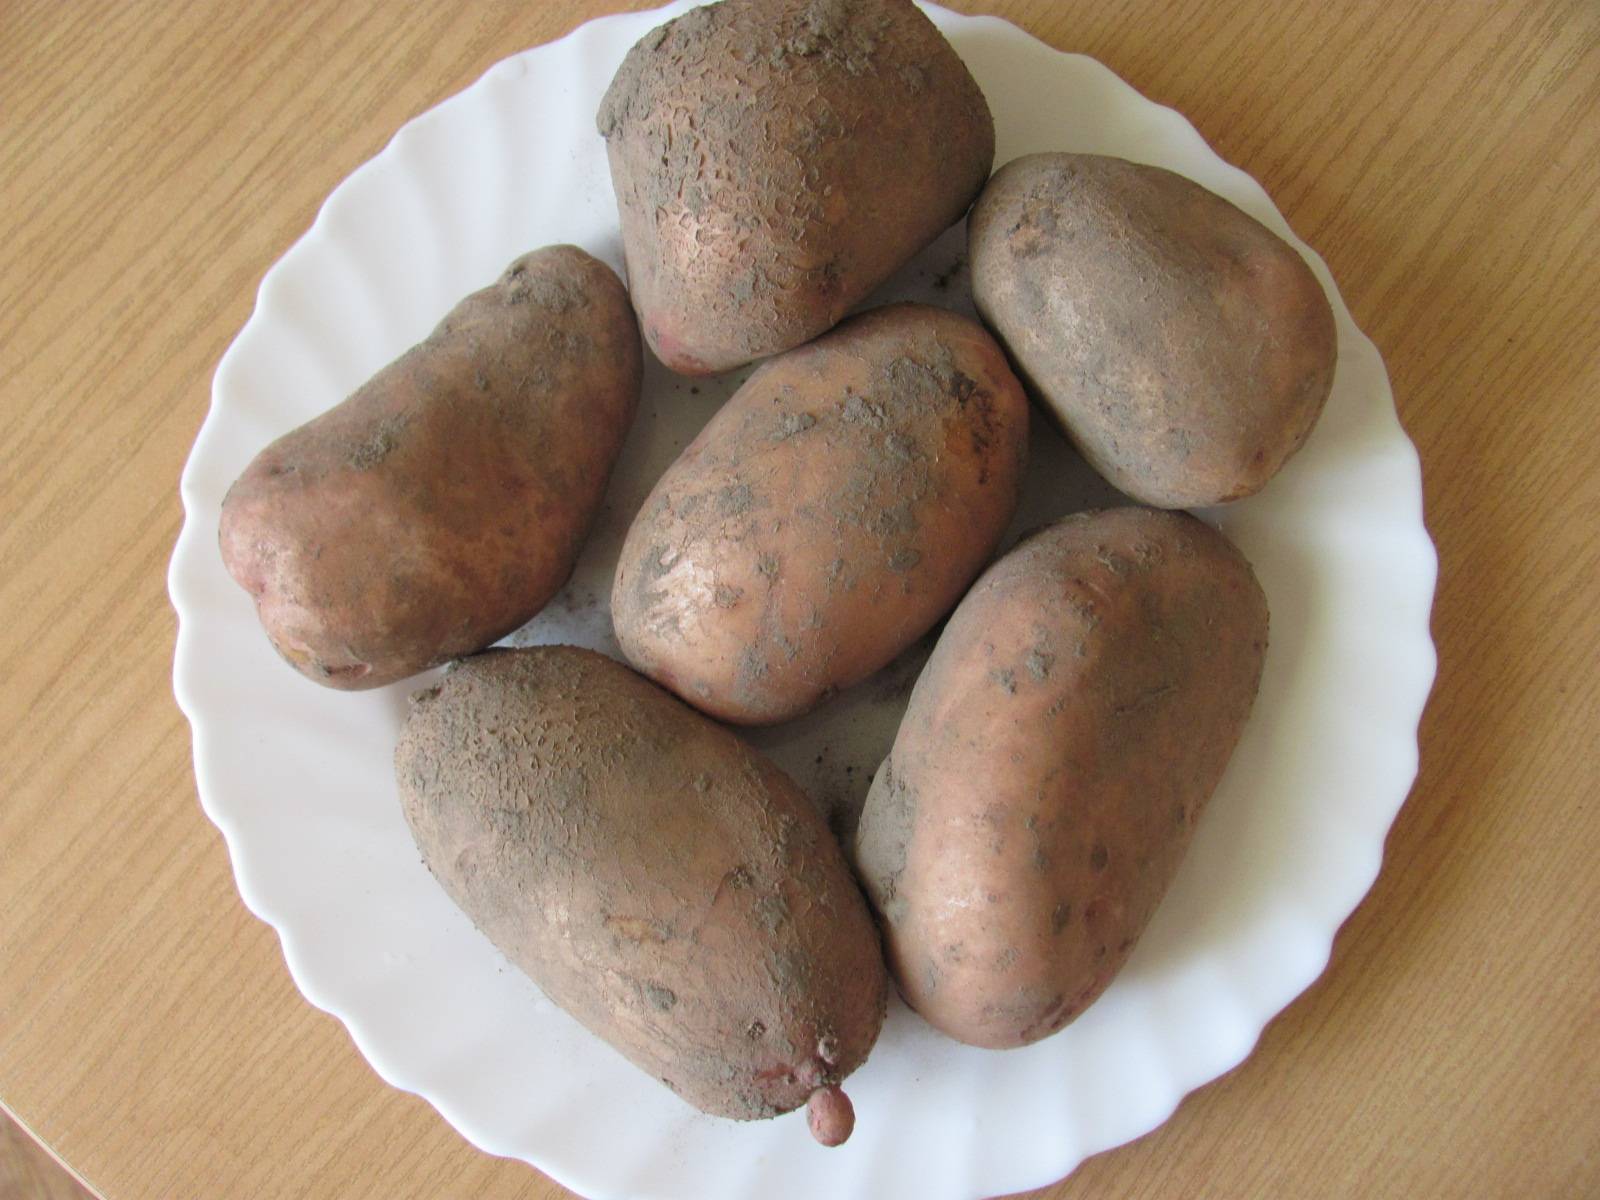 Сорт картофеля янка